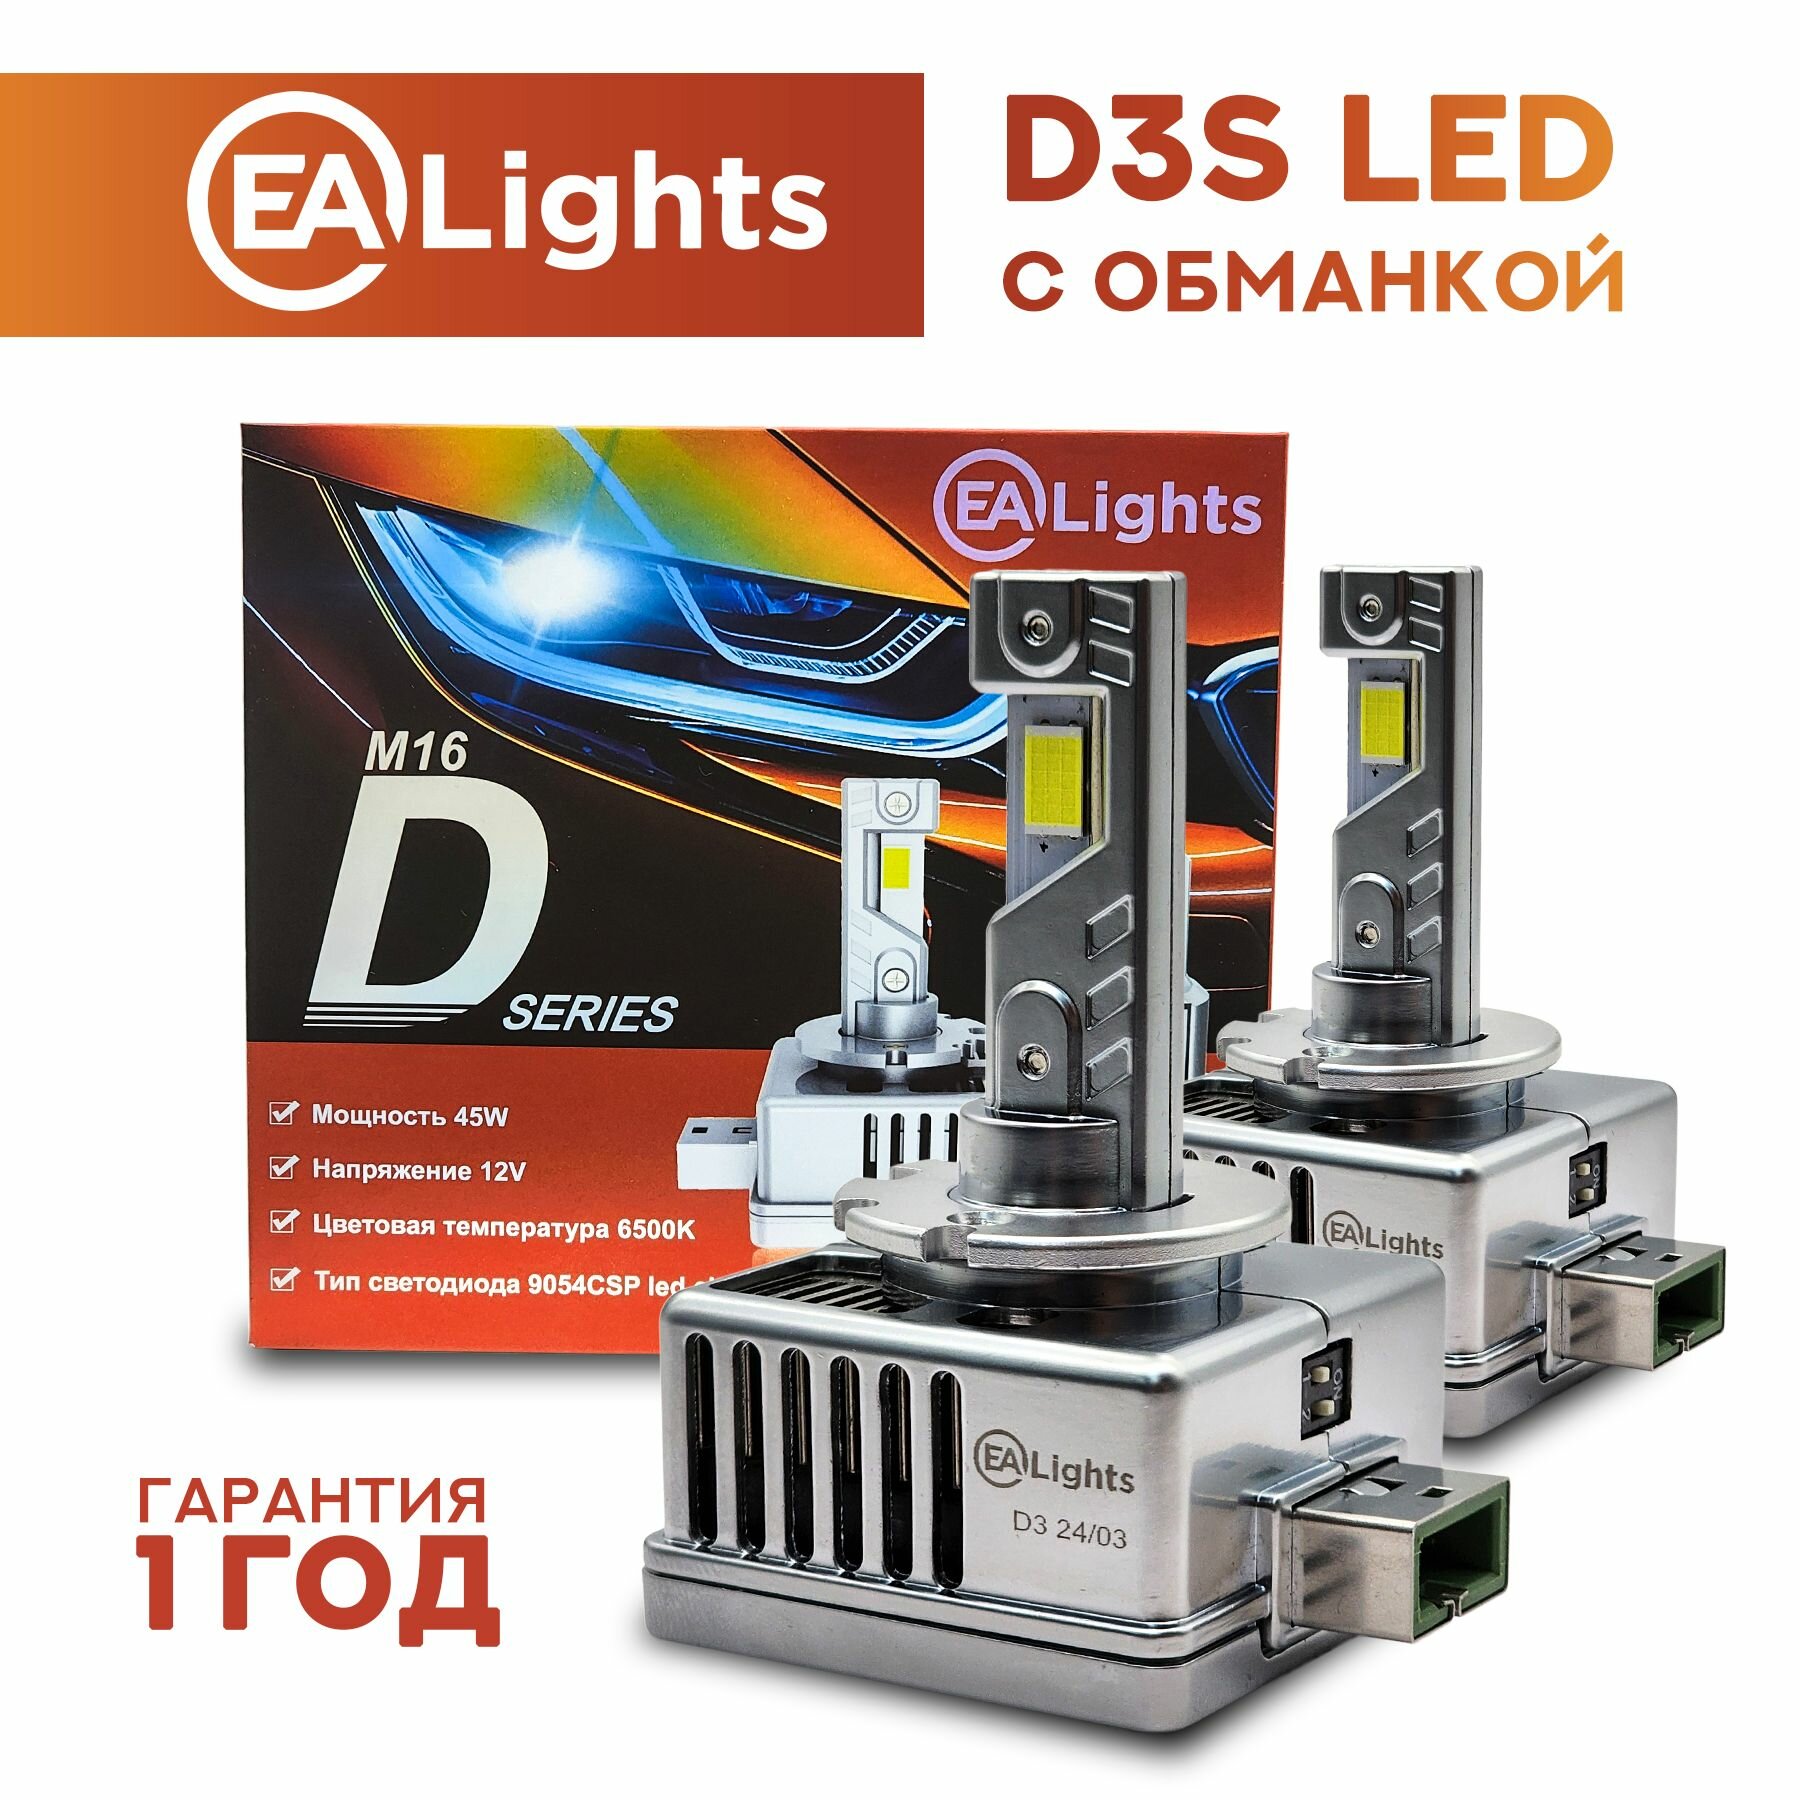 Светодиодные лампы D3S автомобильные EAlights "Canbus", мощность 45W 6500K, 2 шт